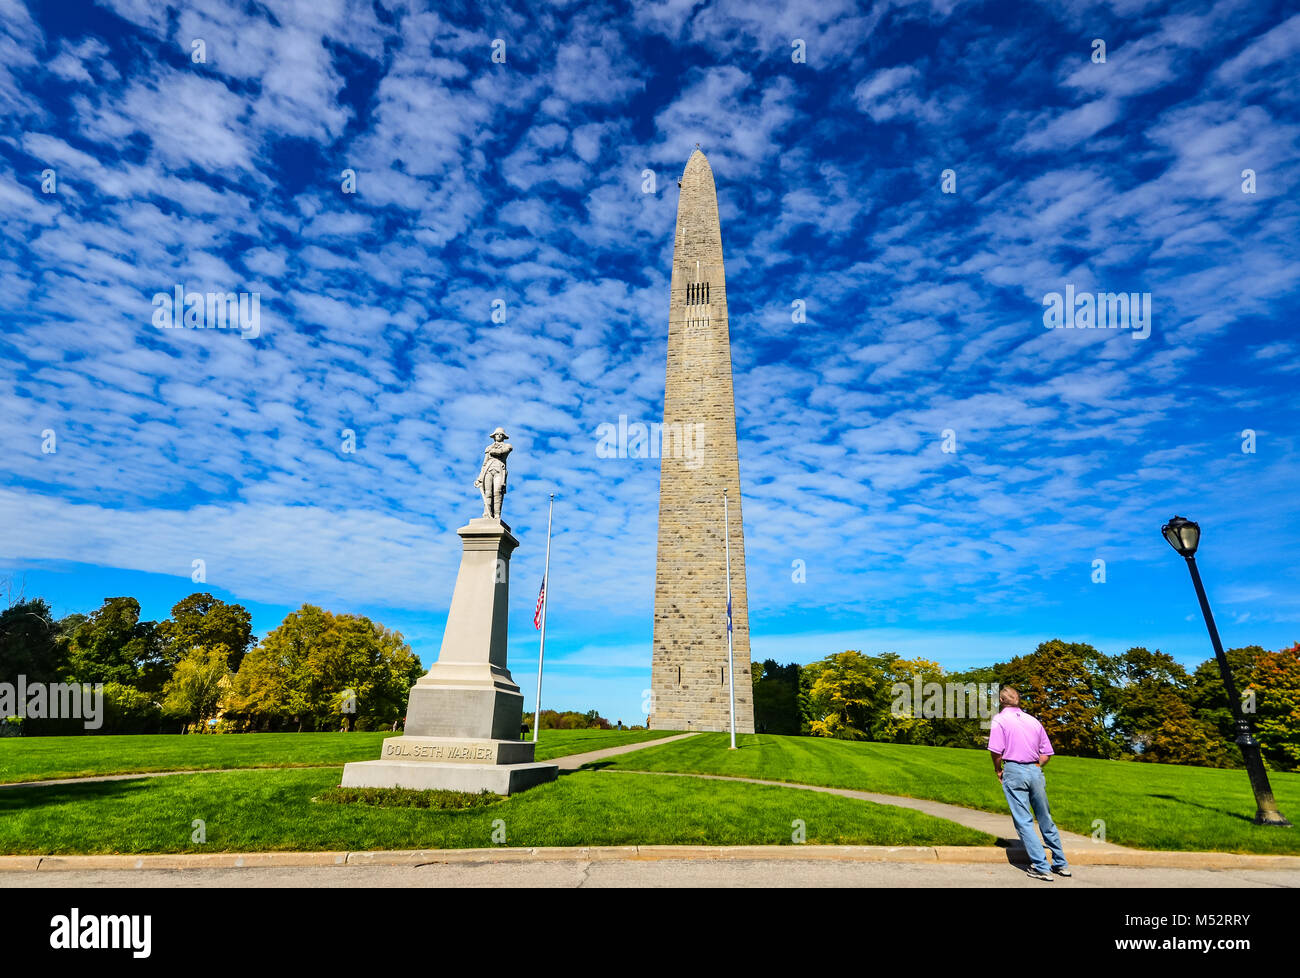 El Bennington Battle Monument está a 301-O-306-pie-alto obelisco de piedra situado a 15 Monument Circle, en Bennington, Vermont. El monumento conmemorativo Foto de stock